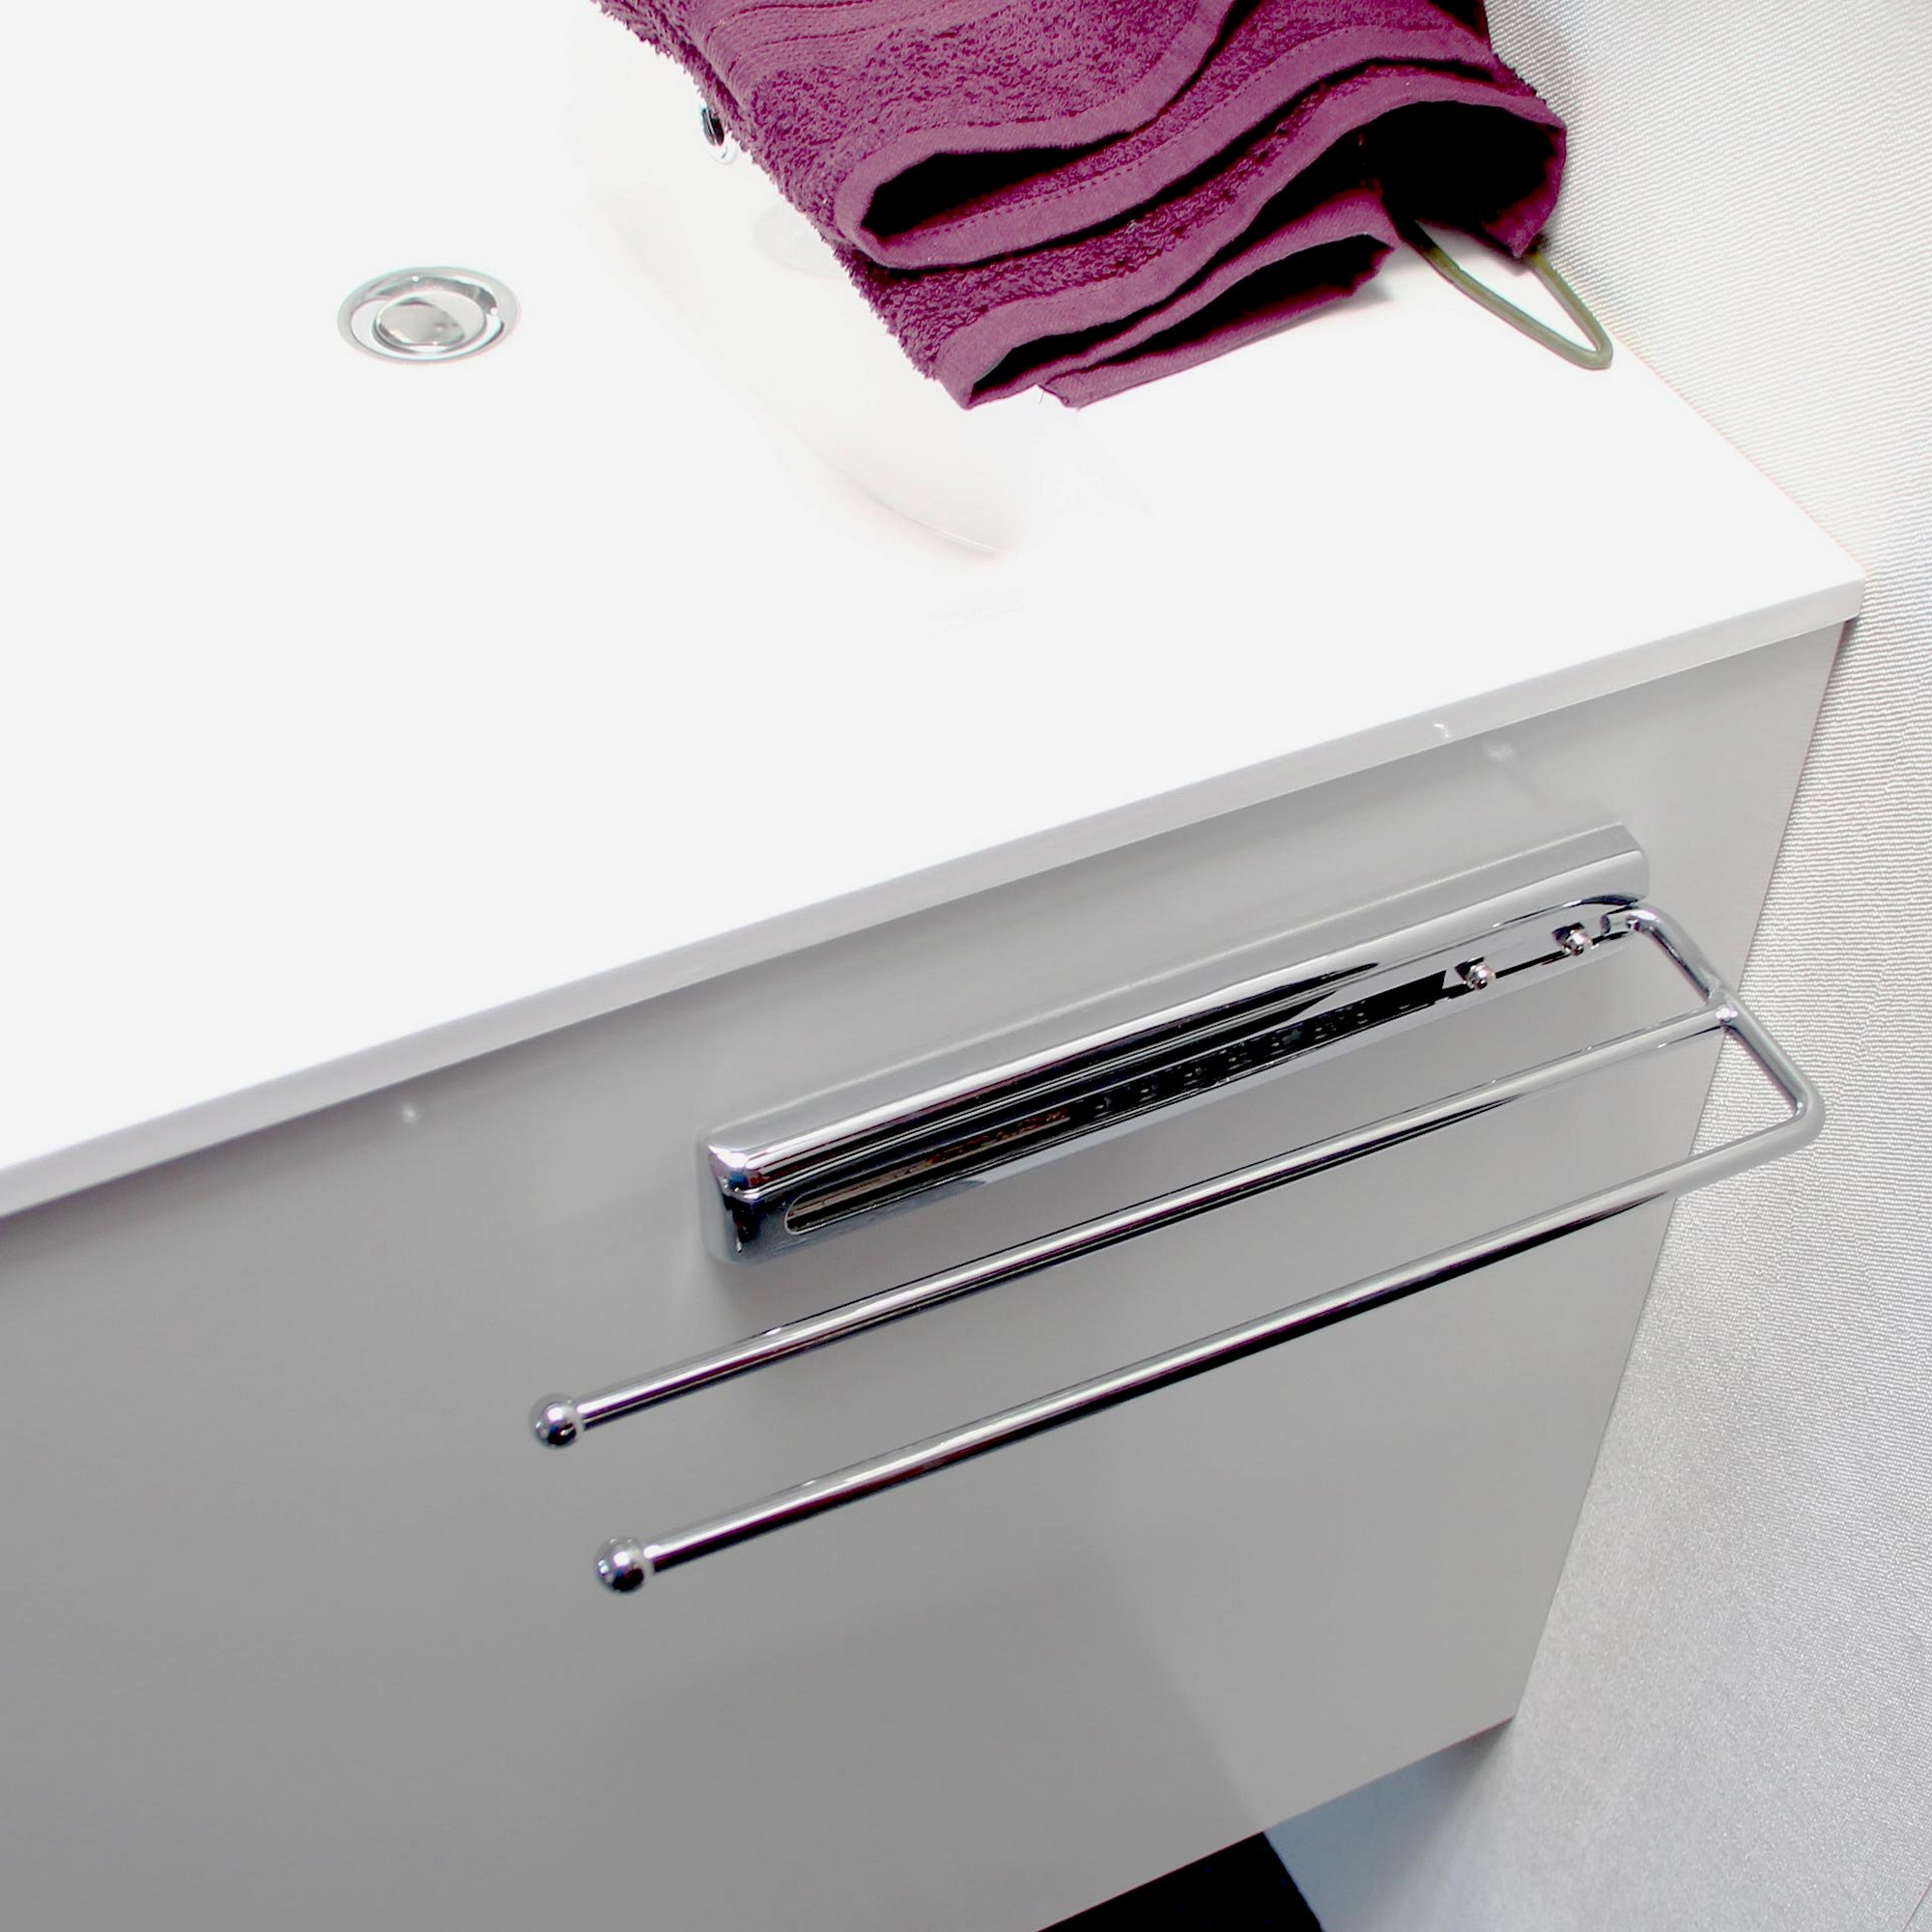 Handtuchhalter verchromt glänzend ausziehbar, 2-armig + product picture